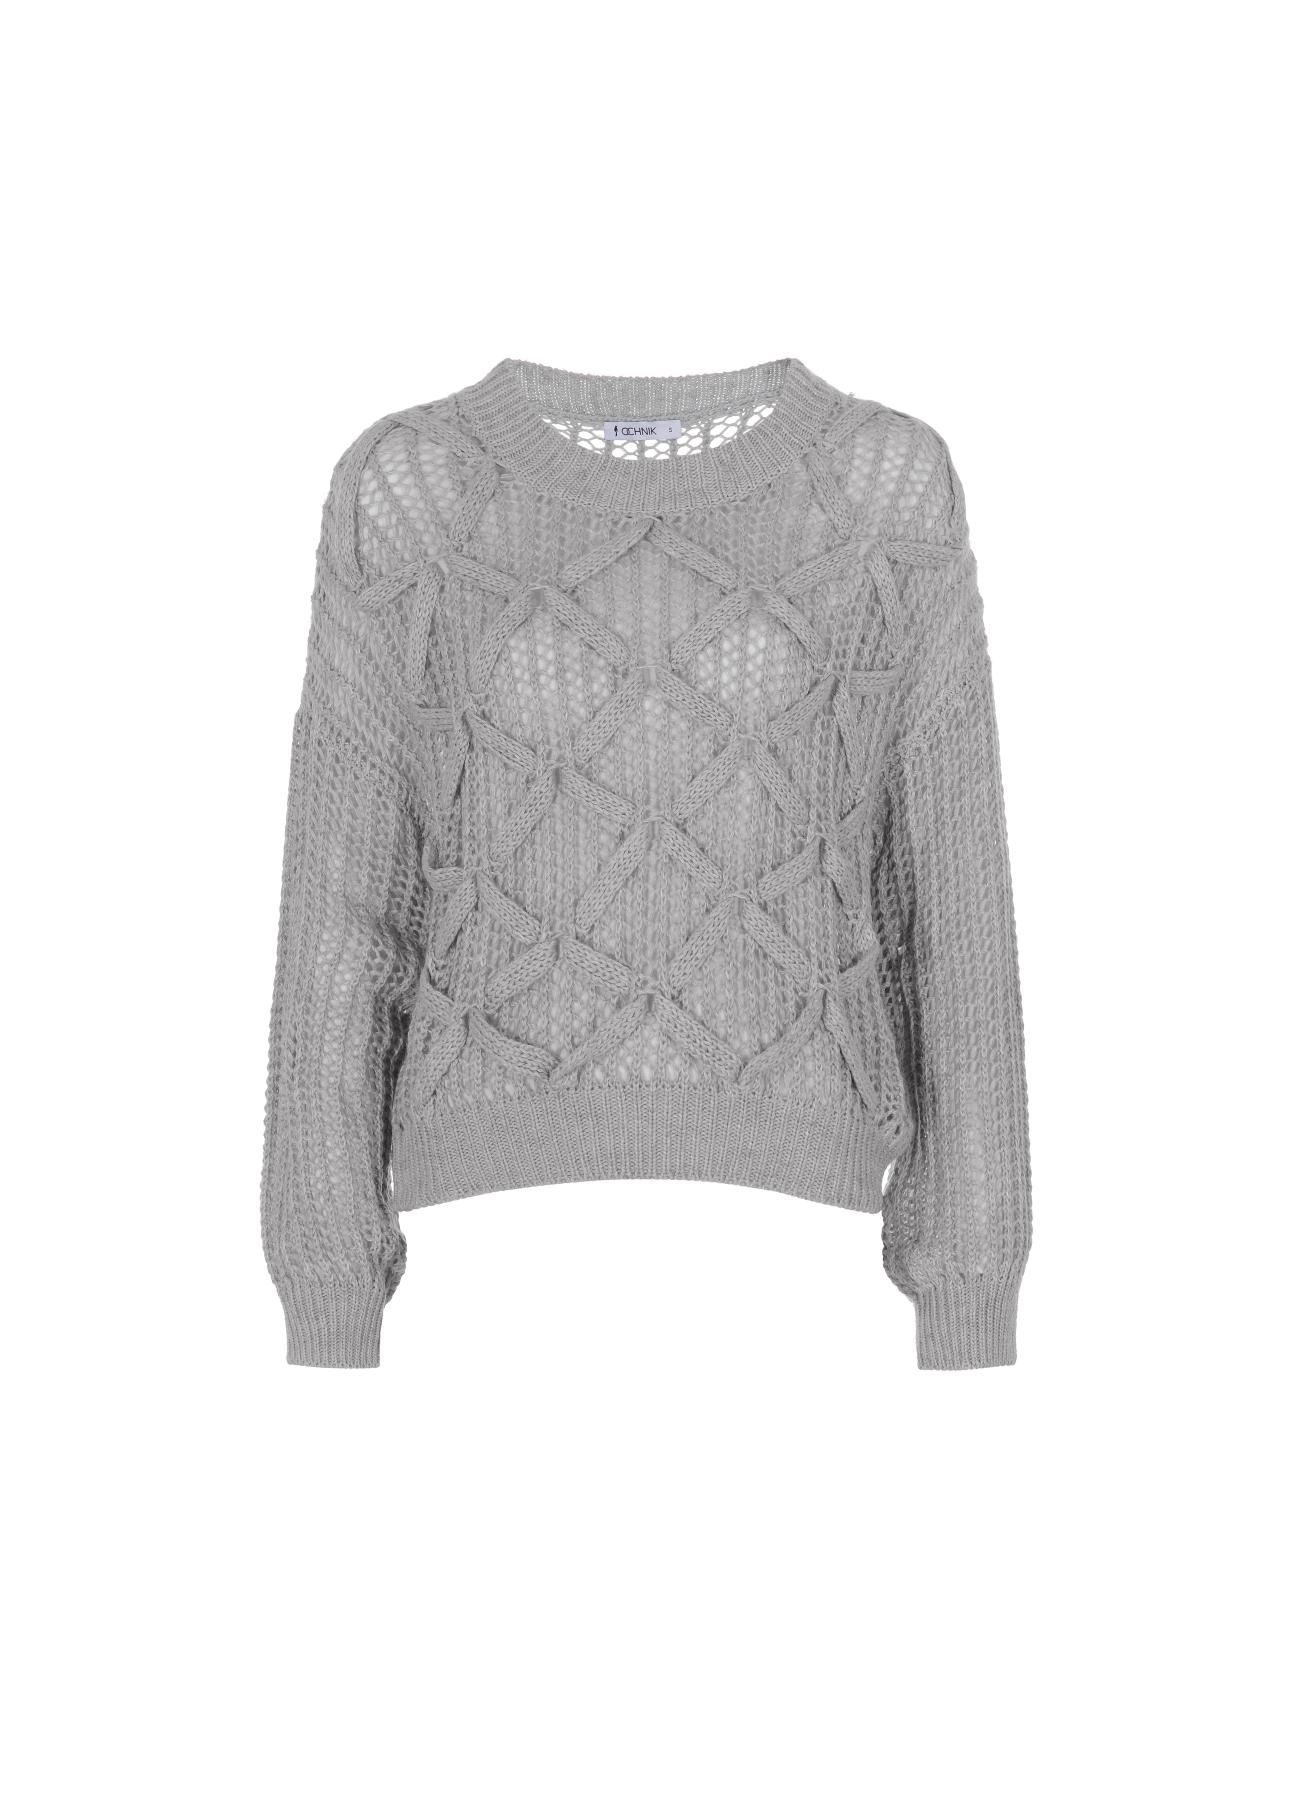 Szary sweter damski SWEDT-0140-91(Z21)